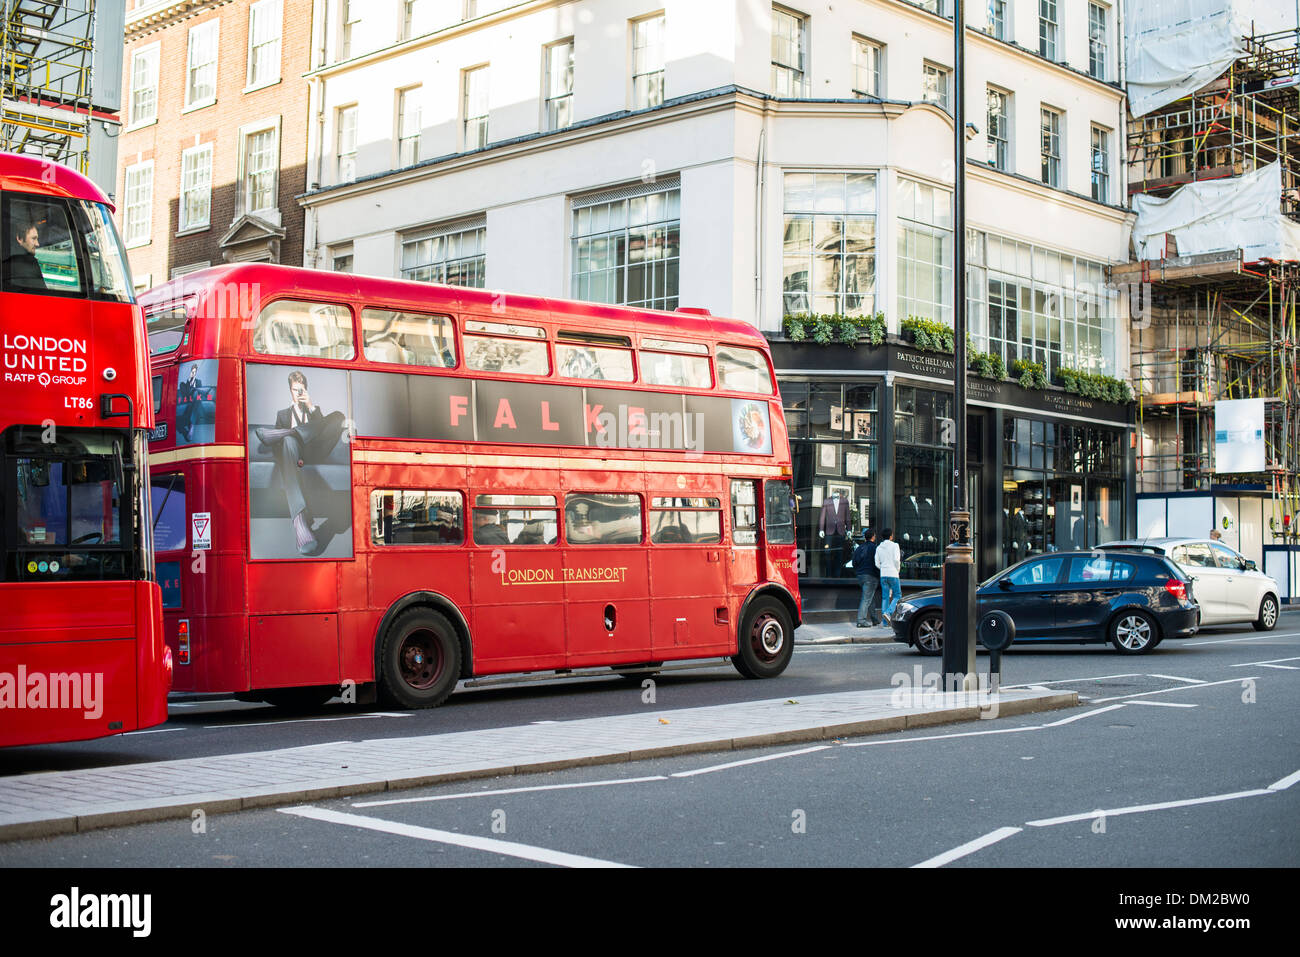 London tour bus touristique rouge. Bus d'époque Banque D'Images